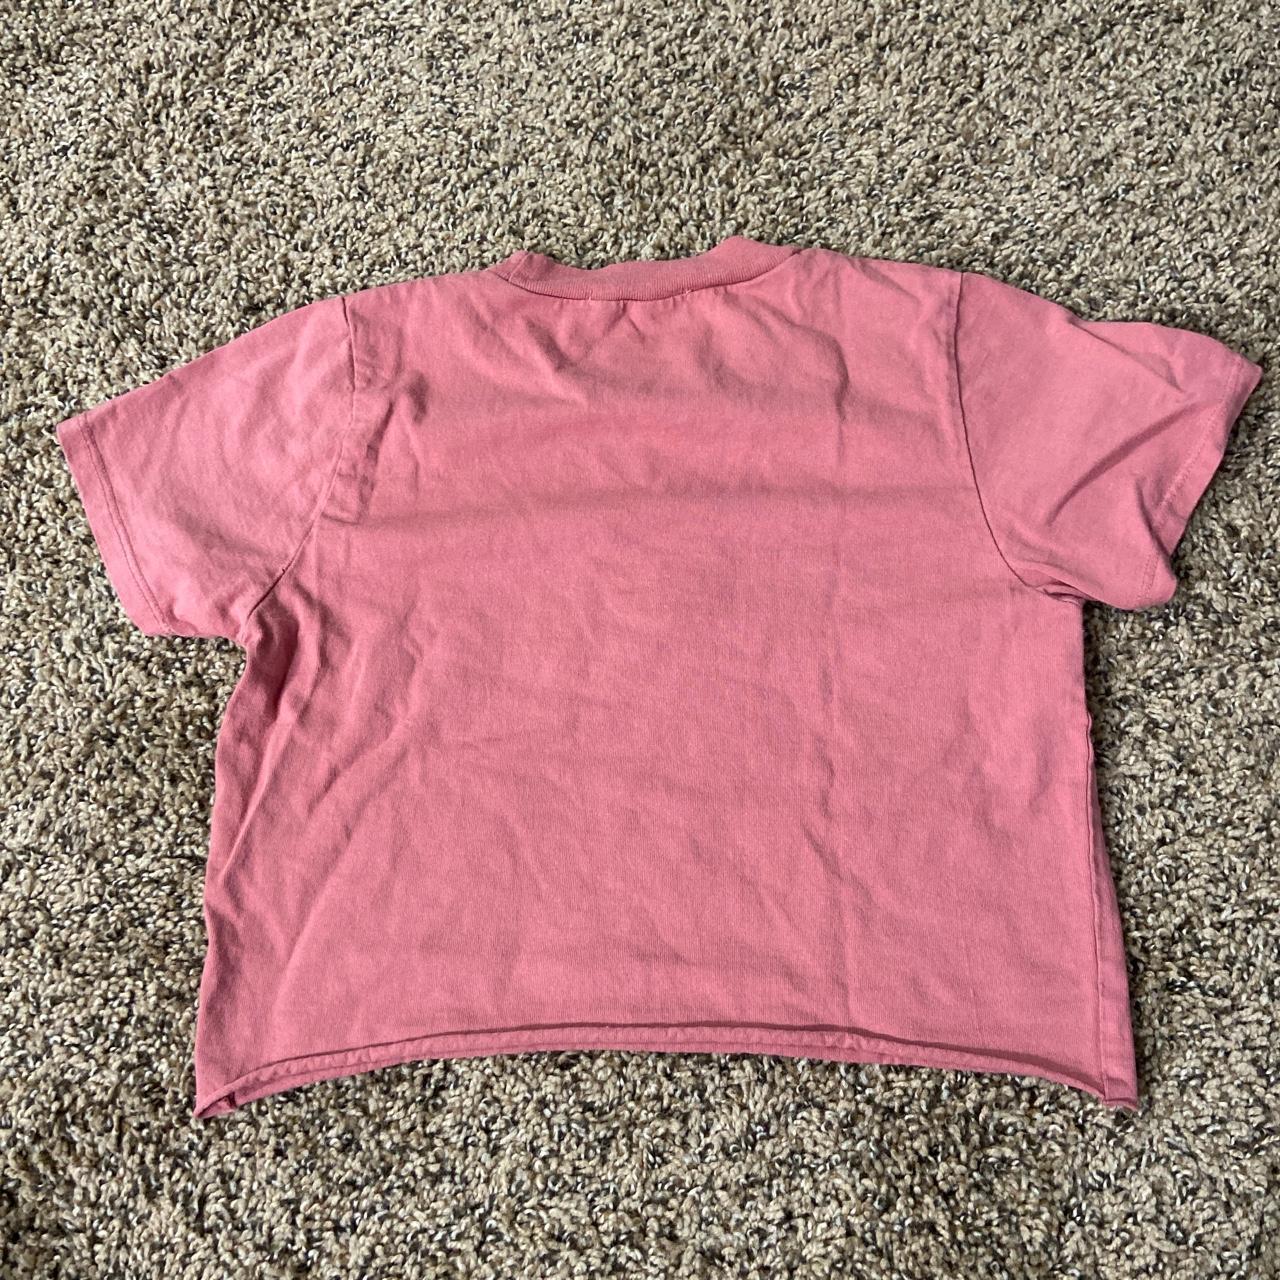 Brandy Melville Blush Pink Butterfly Crop Top T-Shirt XS/S